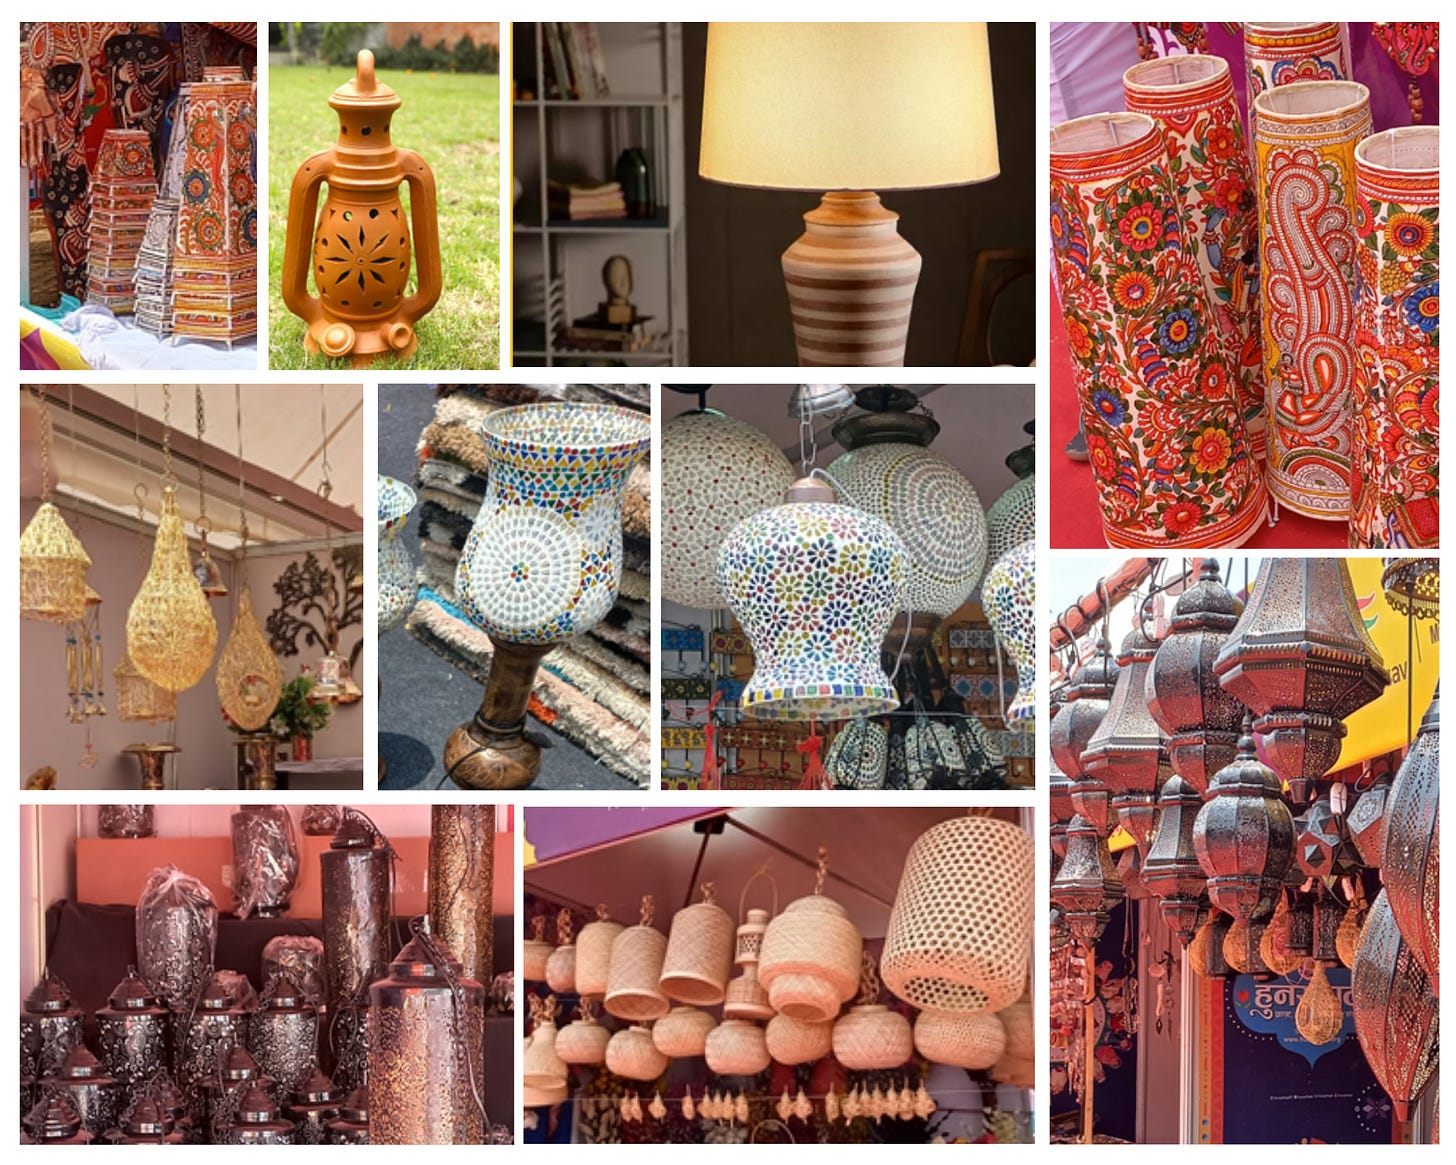 Traditional lanterns, lamps, lamshades; Hunar Haat